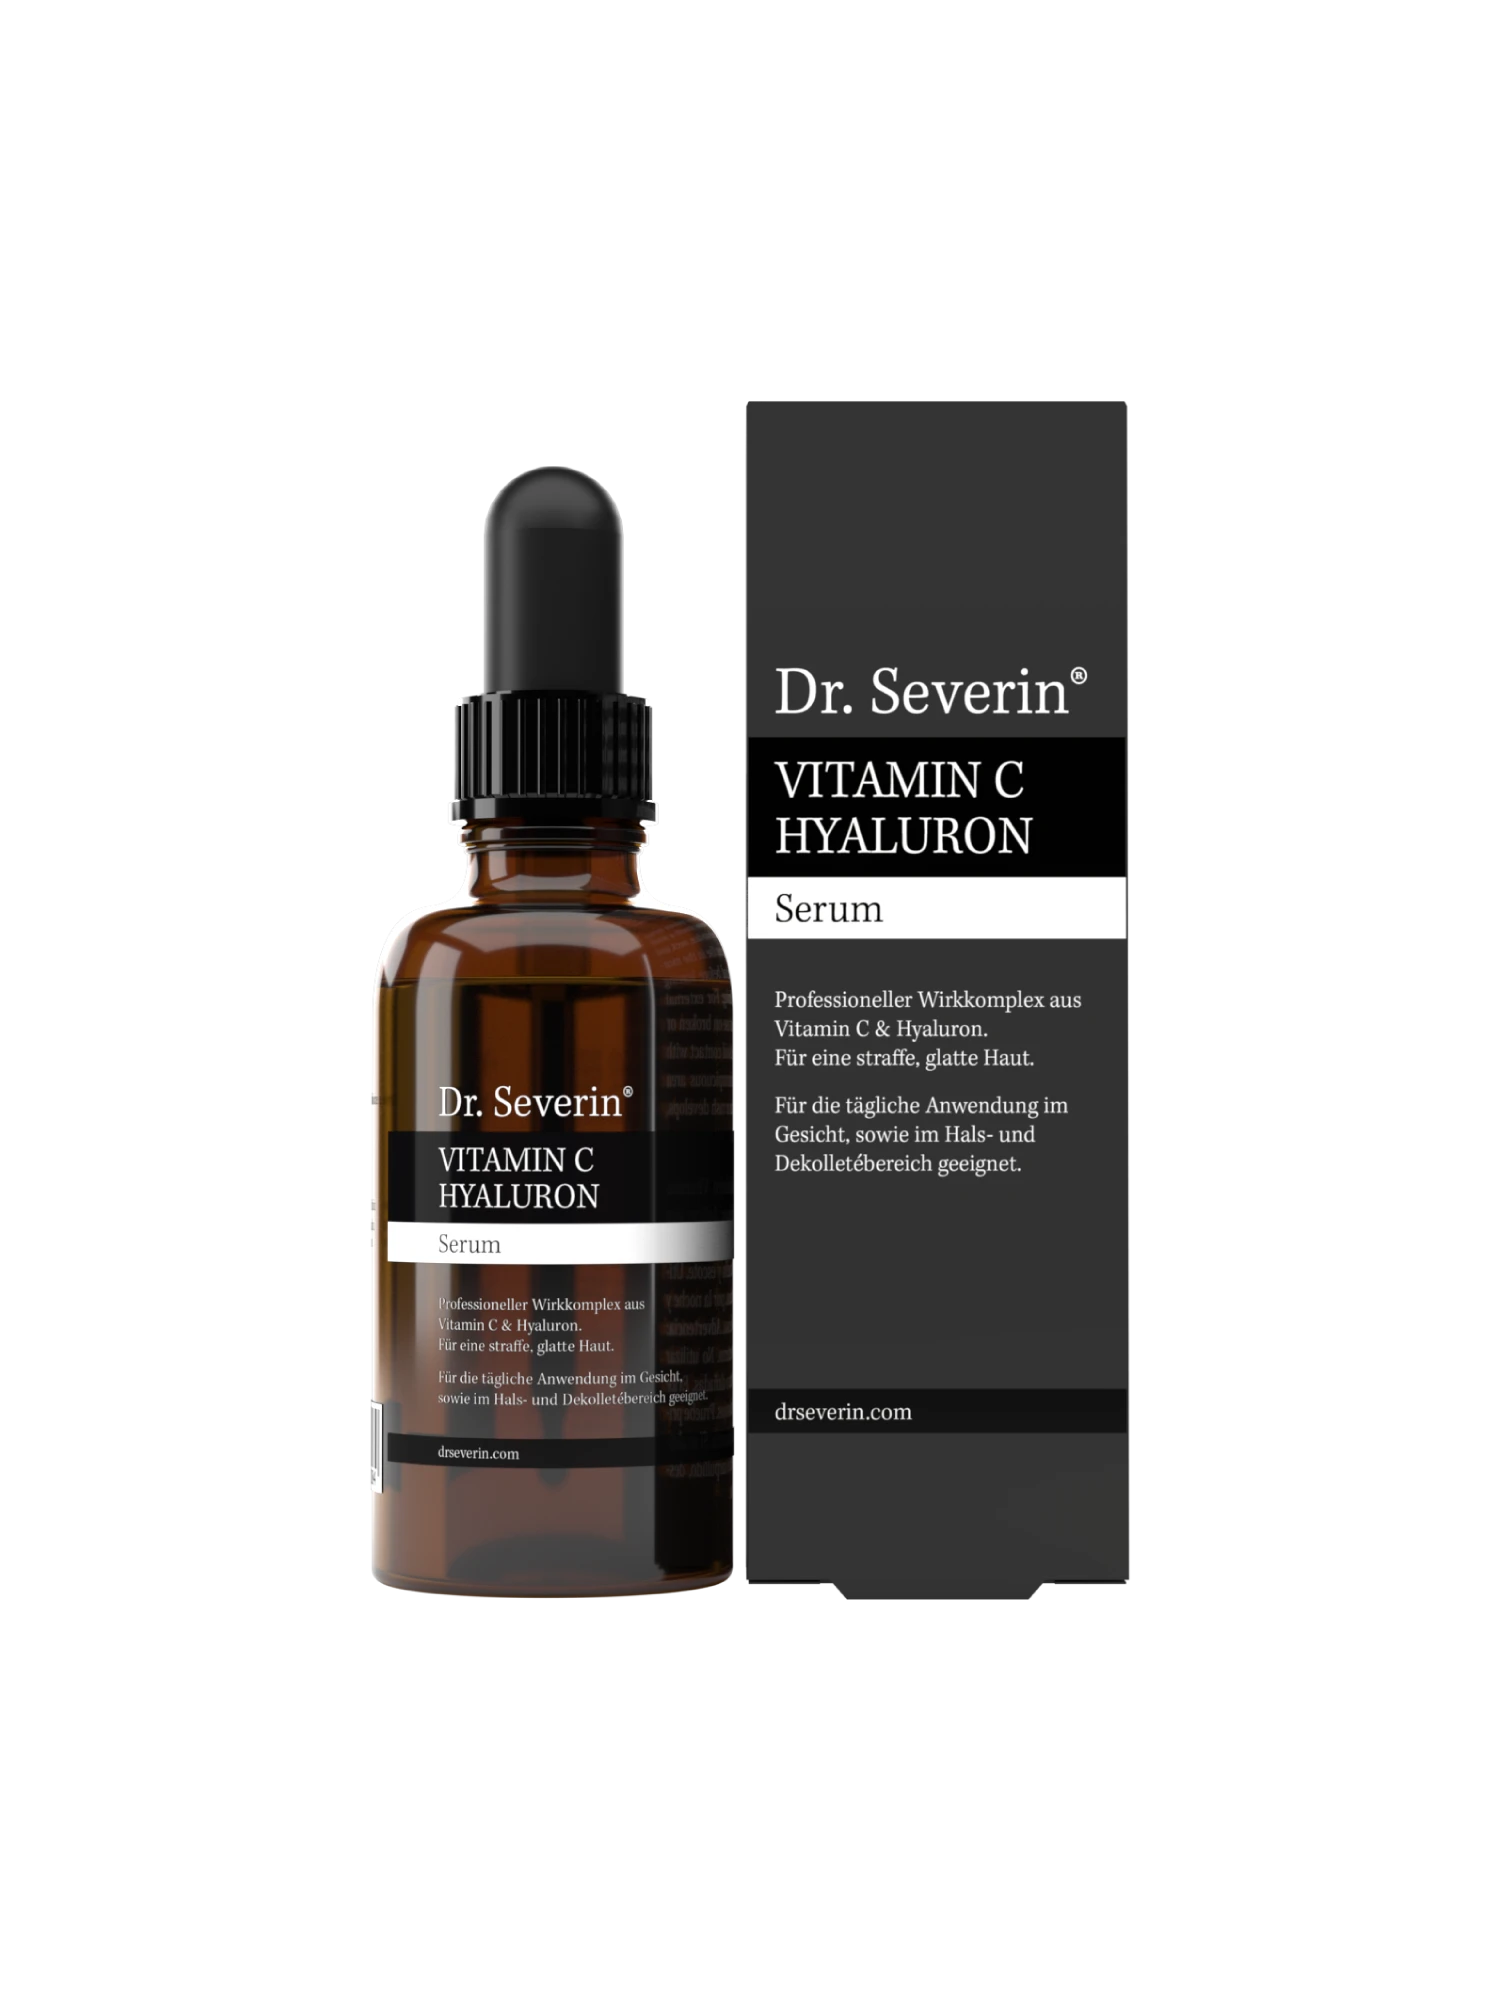 Erfahre die Wunderwirkung für glatte Haut durch Vitamin C und Hyaluron mit dem Dr. Severin Serum